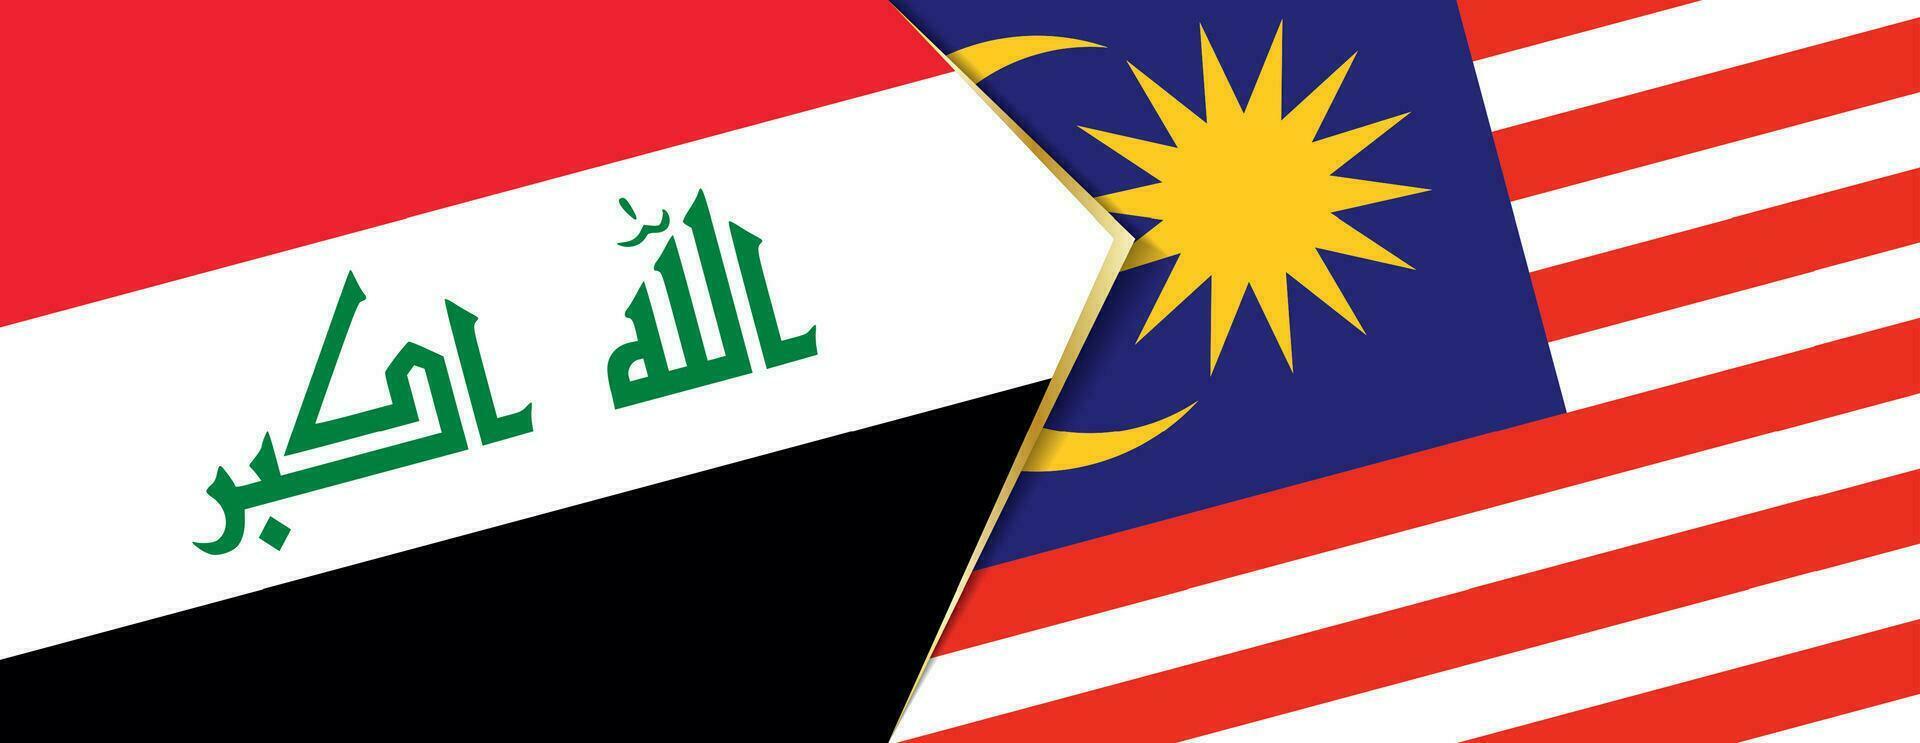 Iraque e Malásia bandeiras, dois vetor bandeiras.